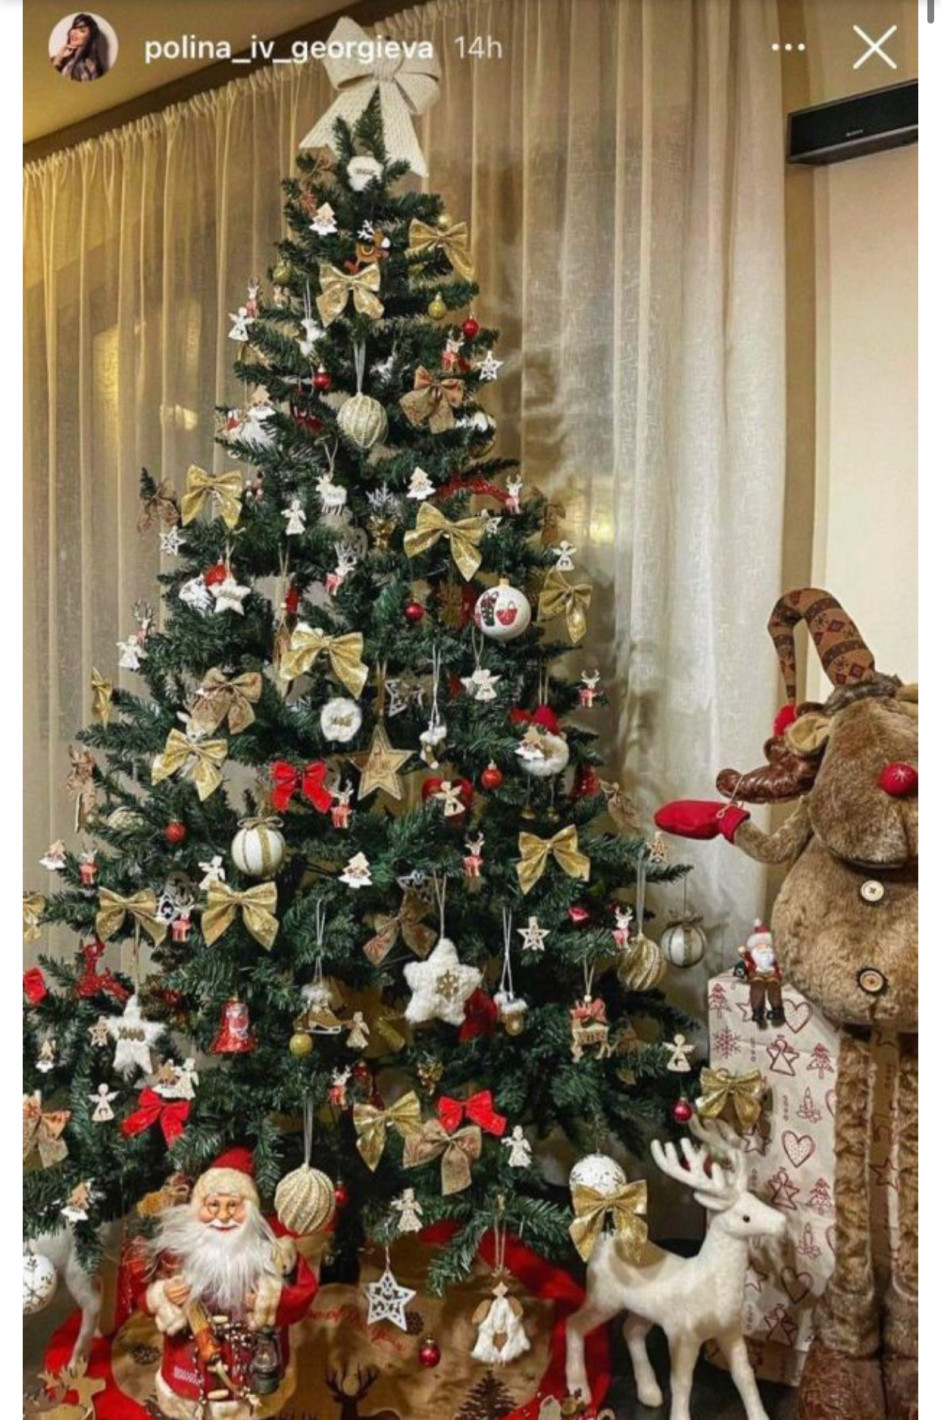 Булката на Благой Георгиев се хвали с първата им приказна Коледа! (СНИМКИ на Полина и украсения им дом)